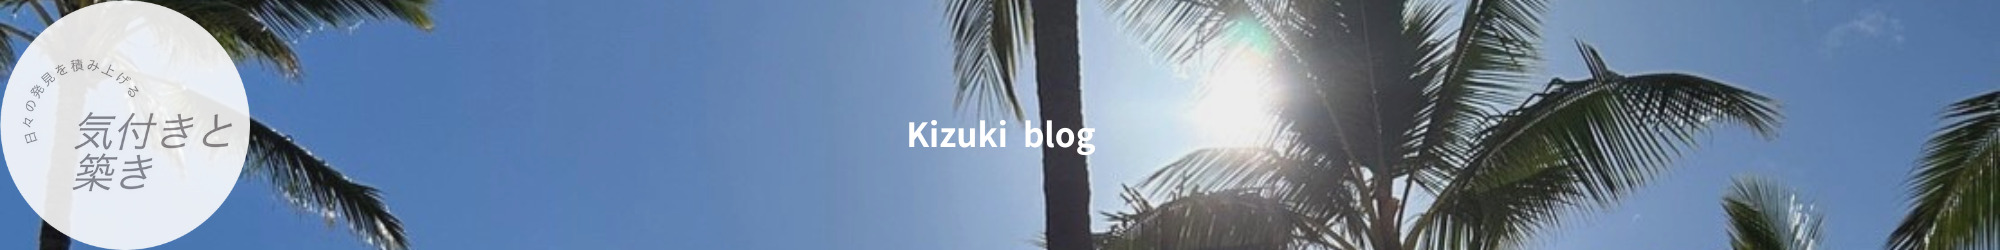 Kizuki blog